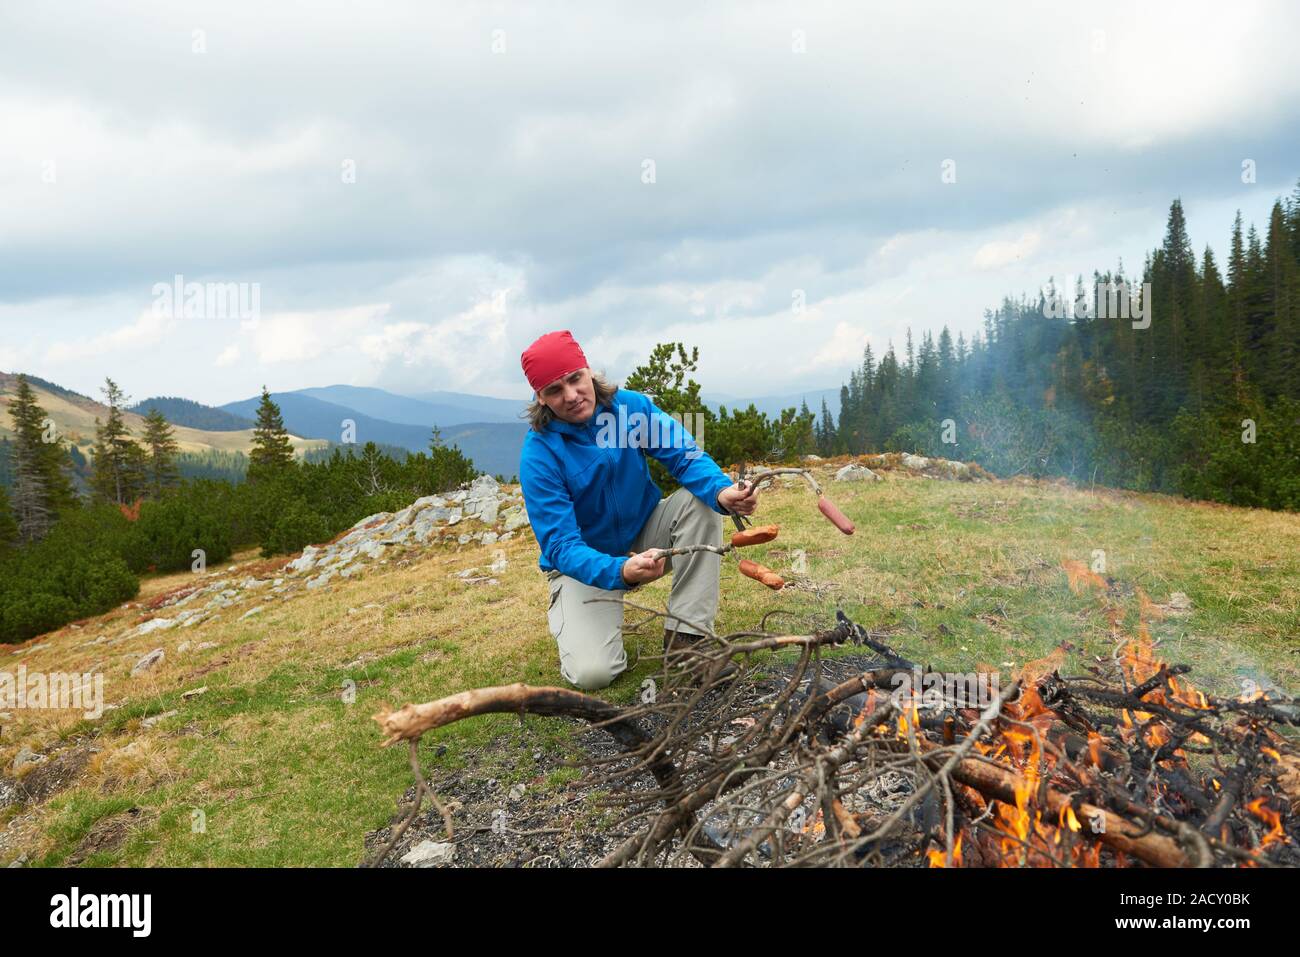 Homme randonnée préparer de délicieuses saucisses sur feu de bois Banque D'Images